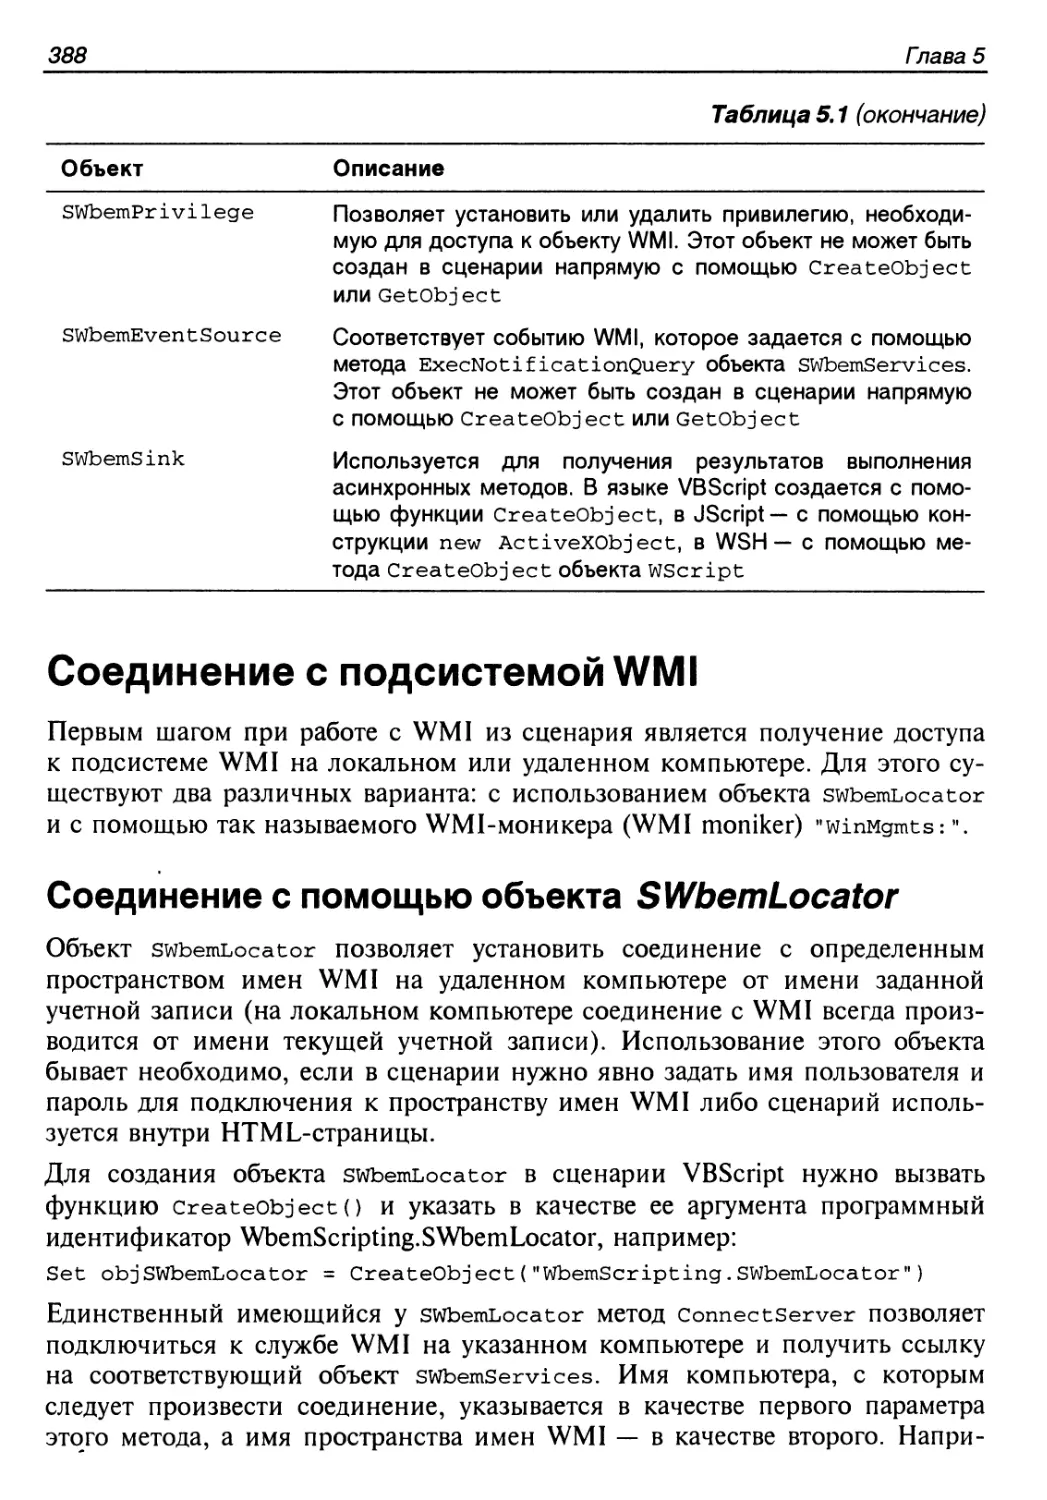 Соединение с подсистемой WMI